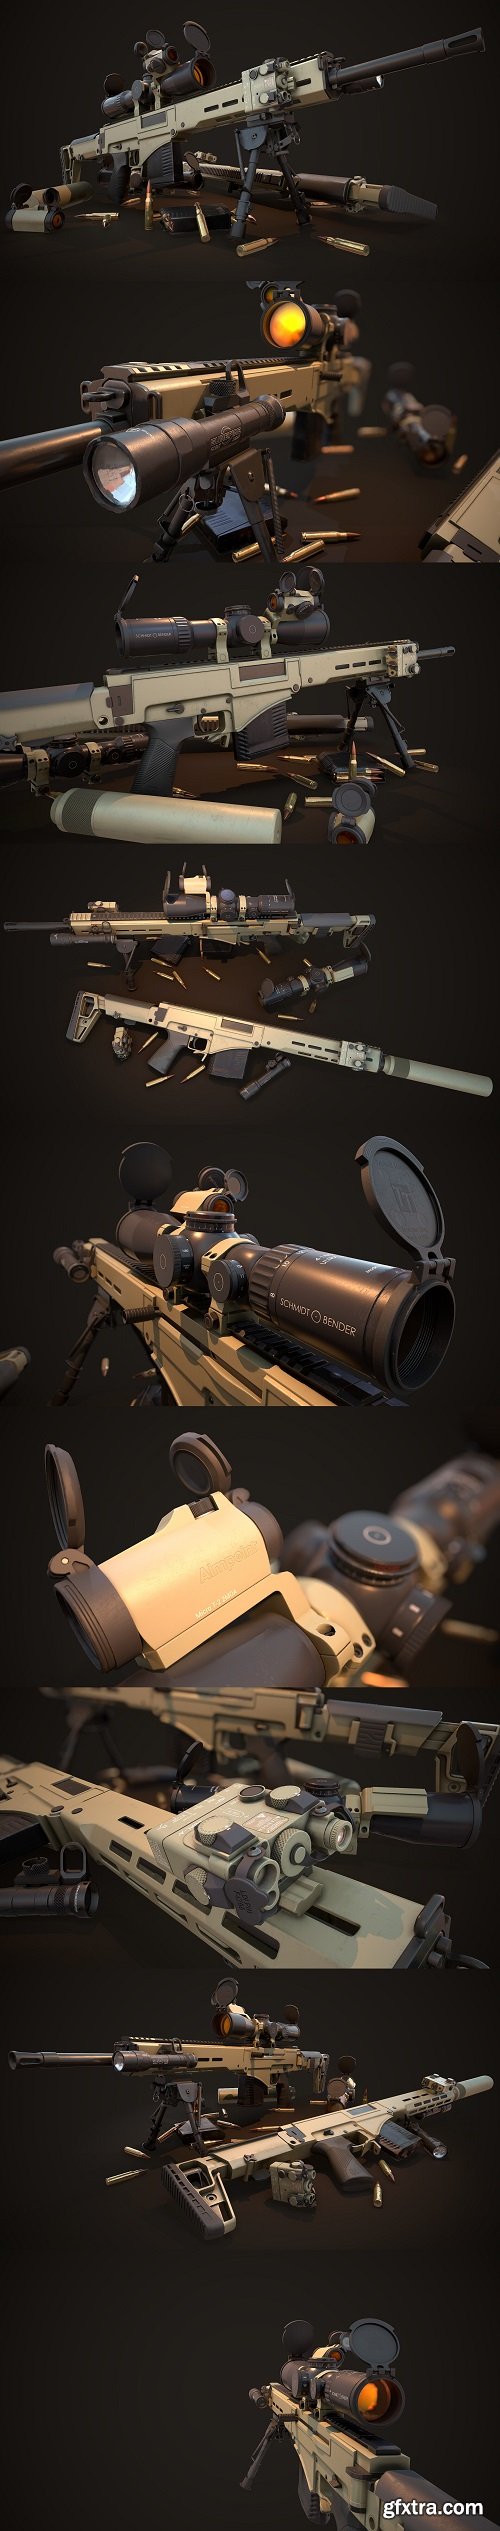 Chukavin SVC-h semi-automatic sniper